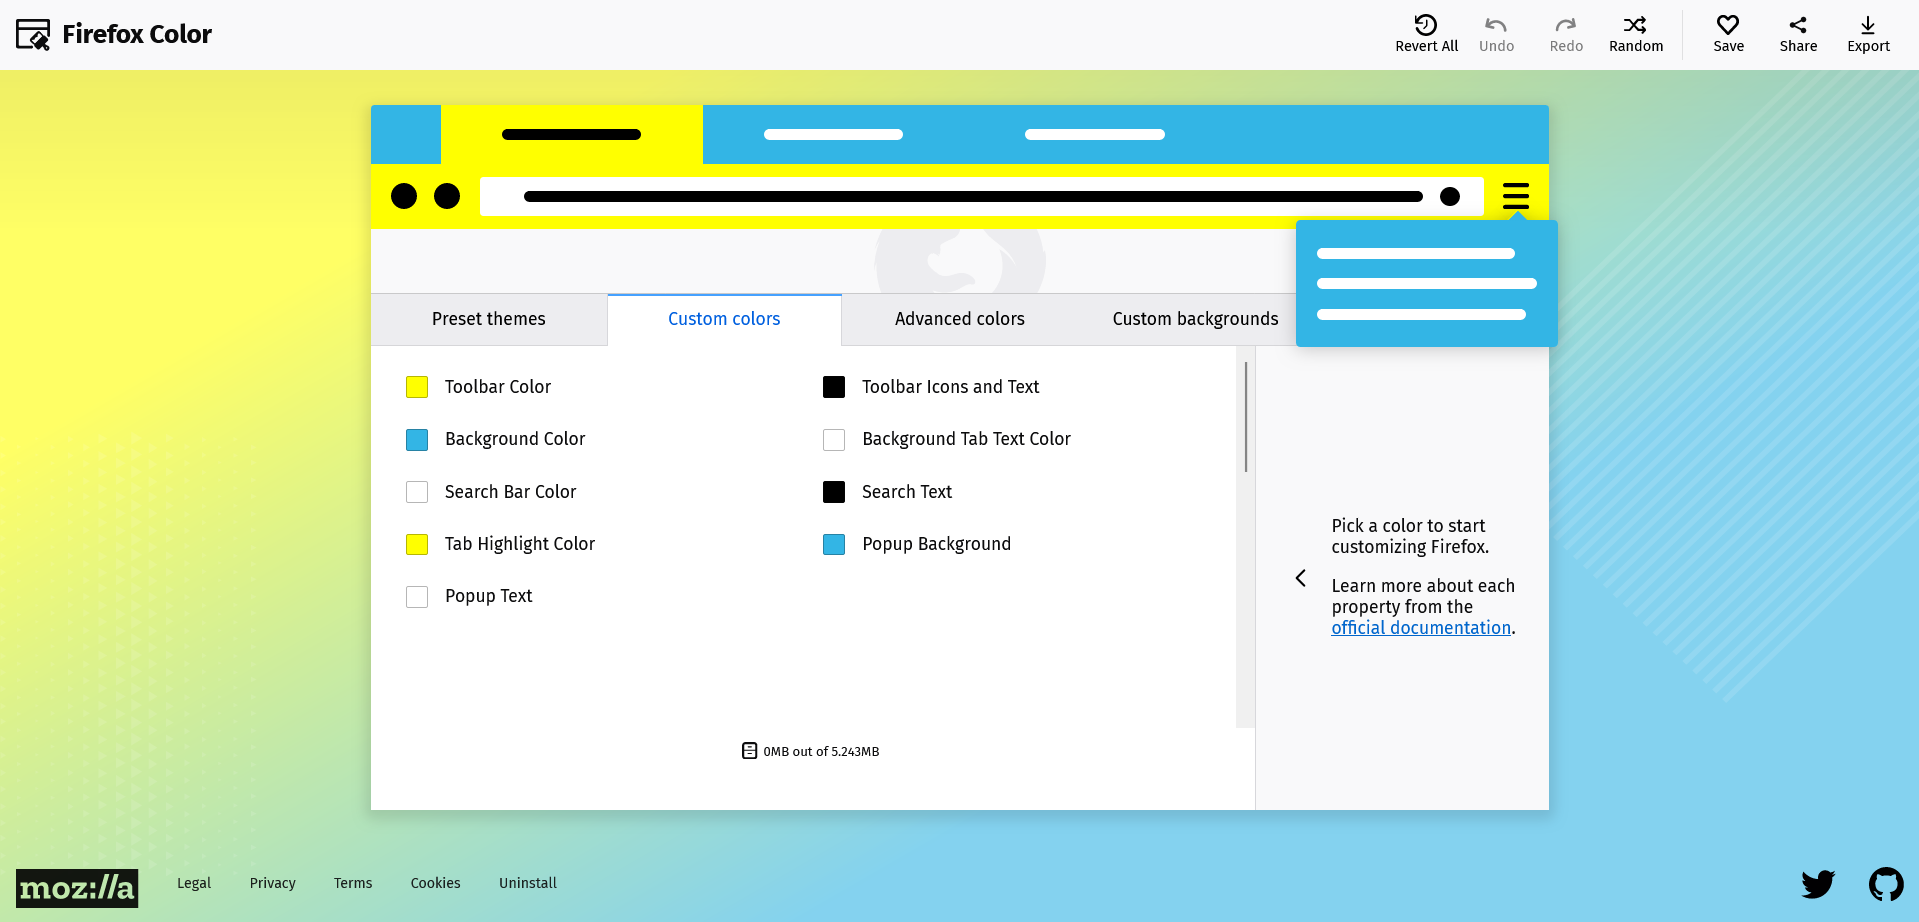 Captura de pantalla de Firefox Color donde se puede configurar el tema de colores del navegador